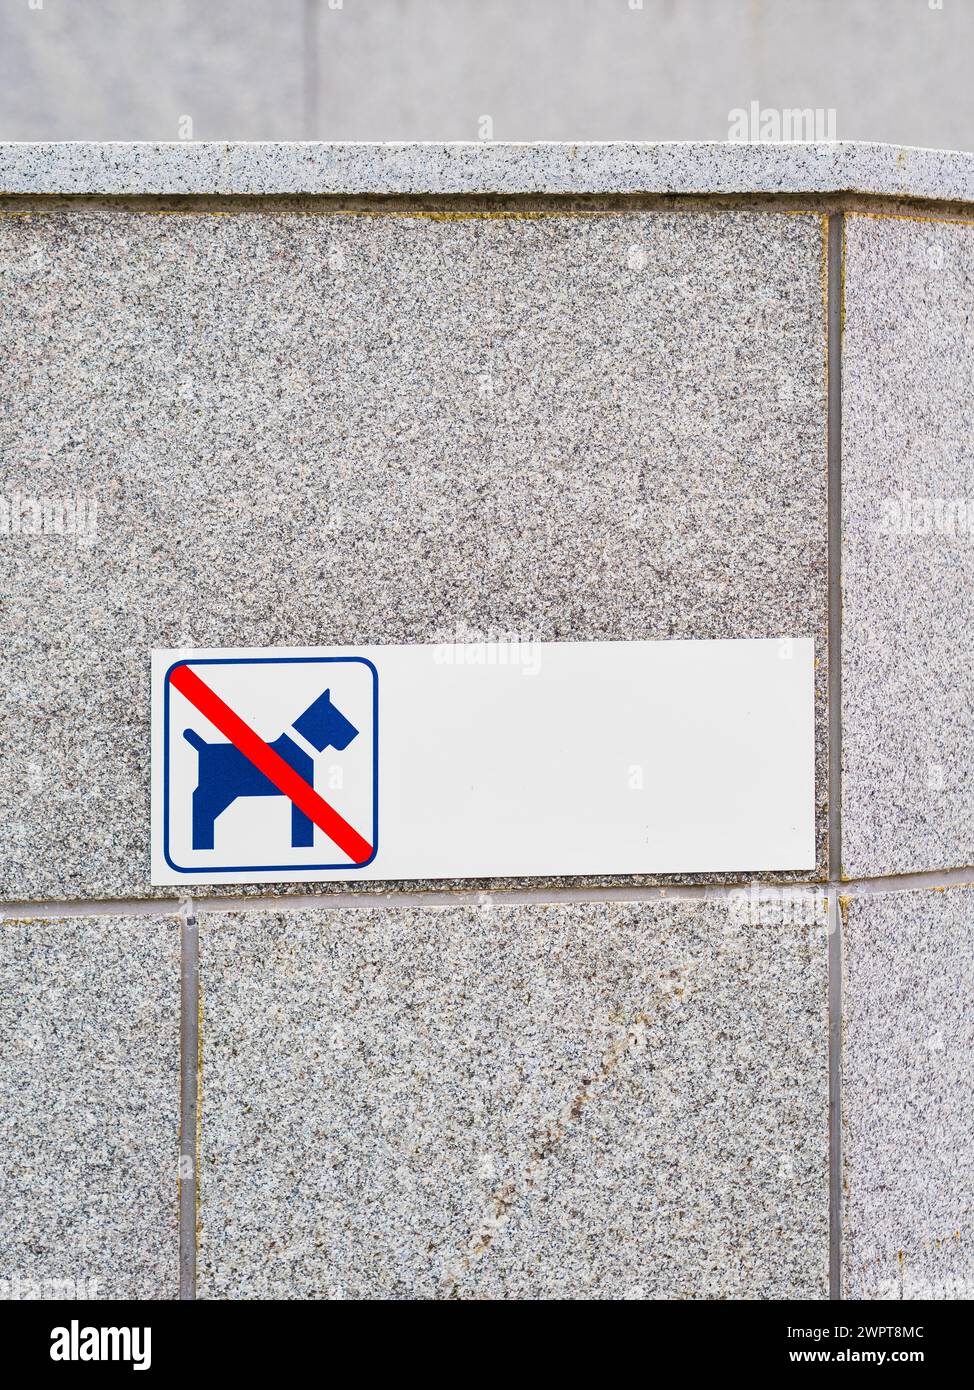 Ce panneau, attaché à un mur de pierre grise en Suède, indique clairement que la zone est interdite à la marche ou au repos des chiens. Le signe bleu et blanc Banque D'Images